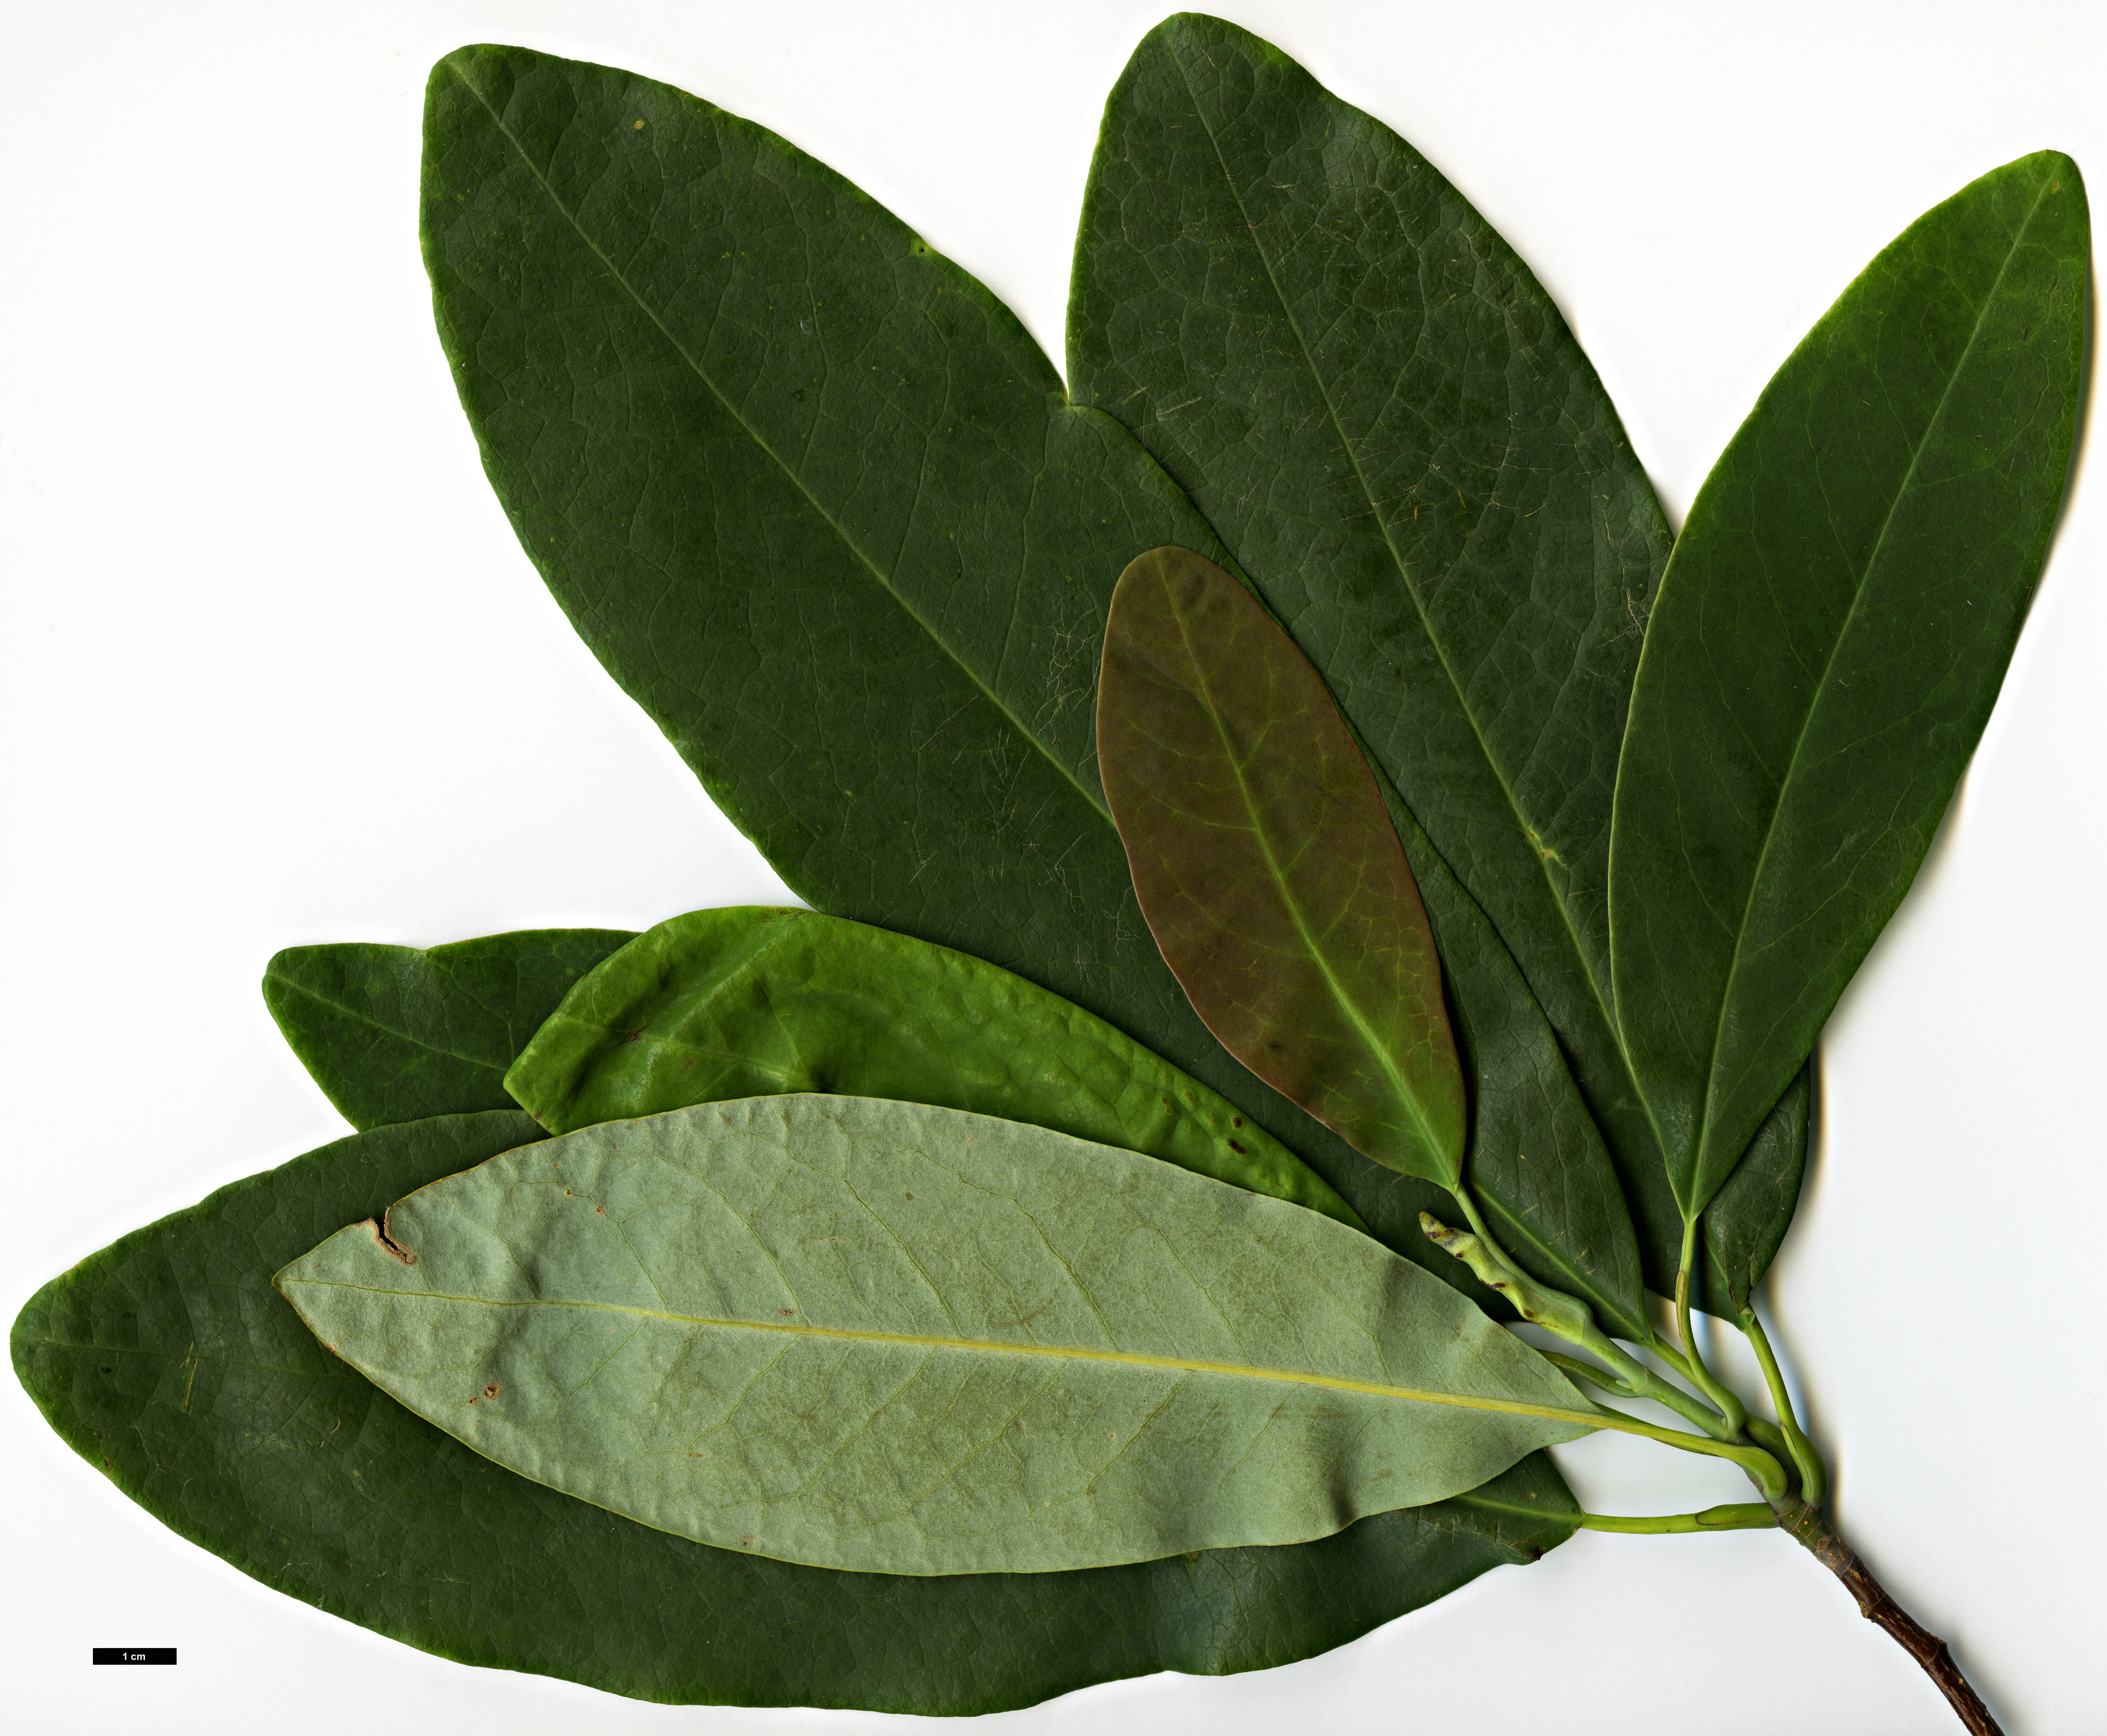 High resolution image: Family: Magnoliaceae - Genus: Magnolia - Taxon: decidua